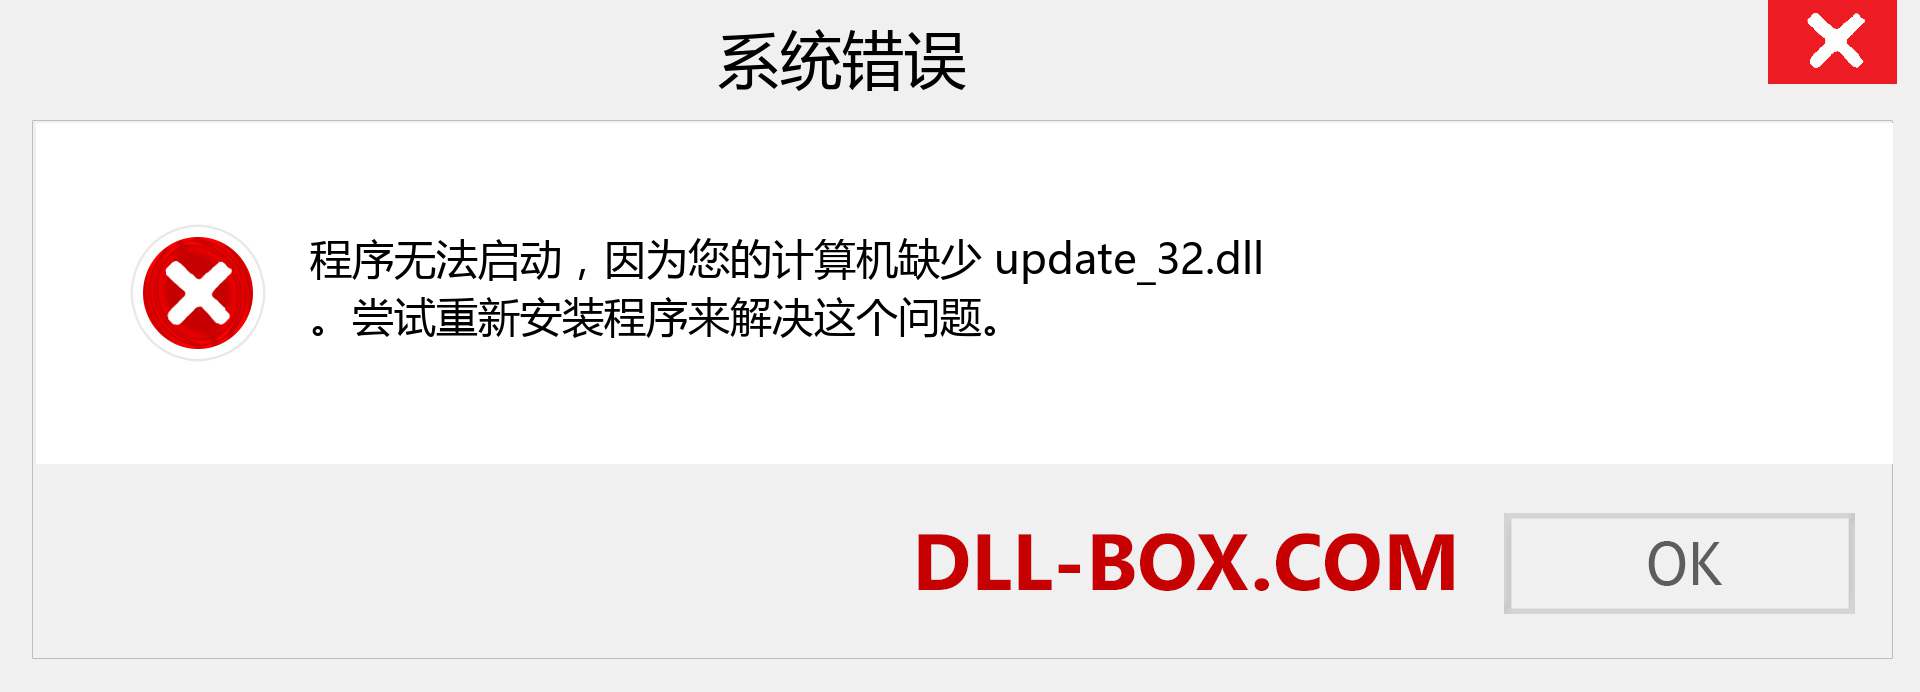 update_32.dll 文件丢失？。 适用于 Windows 7、8、10 的下载 - 修复 Windows、照片、图像上的 update_32 dll 丢失错误